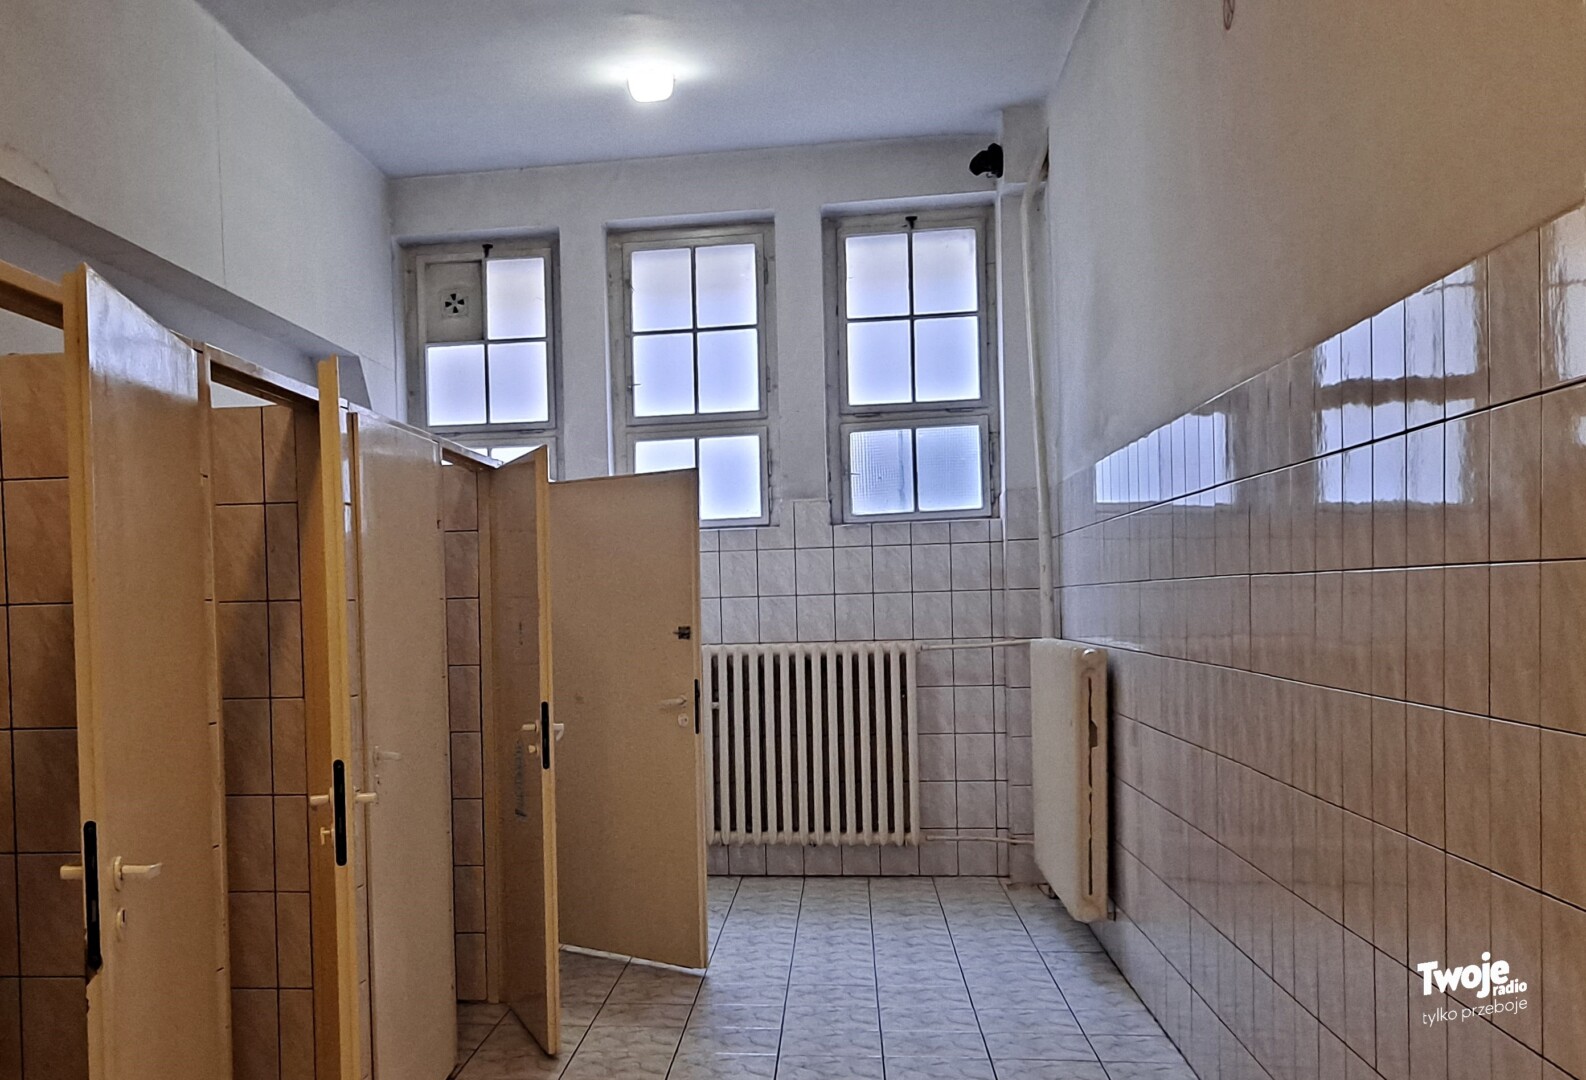 Kamery W Szkolnych Toaletach Naruszenie Prywatności Czy Konieczność ZdjĘcia Twoje Radio 0143